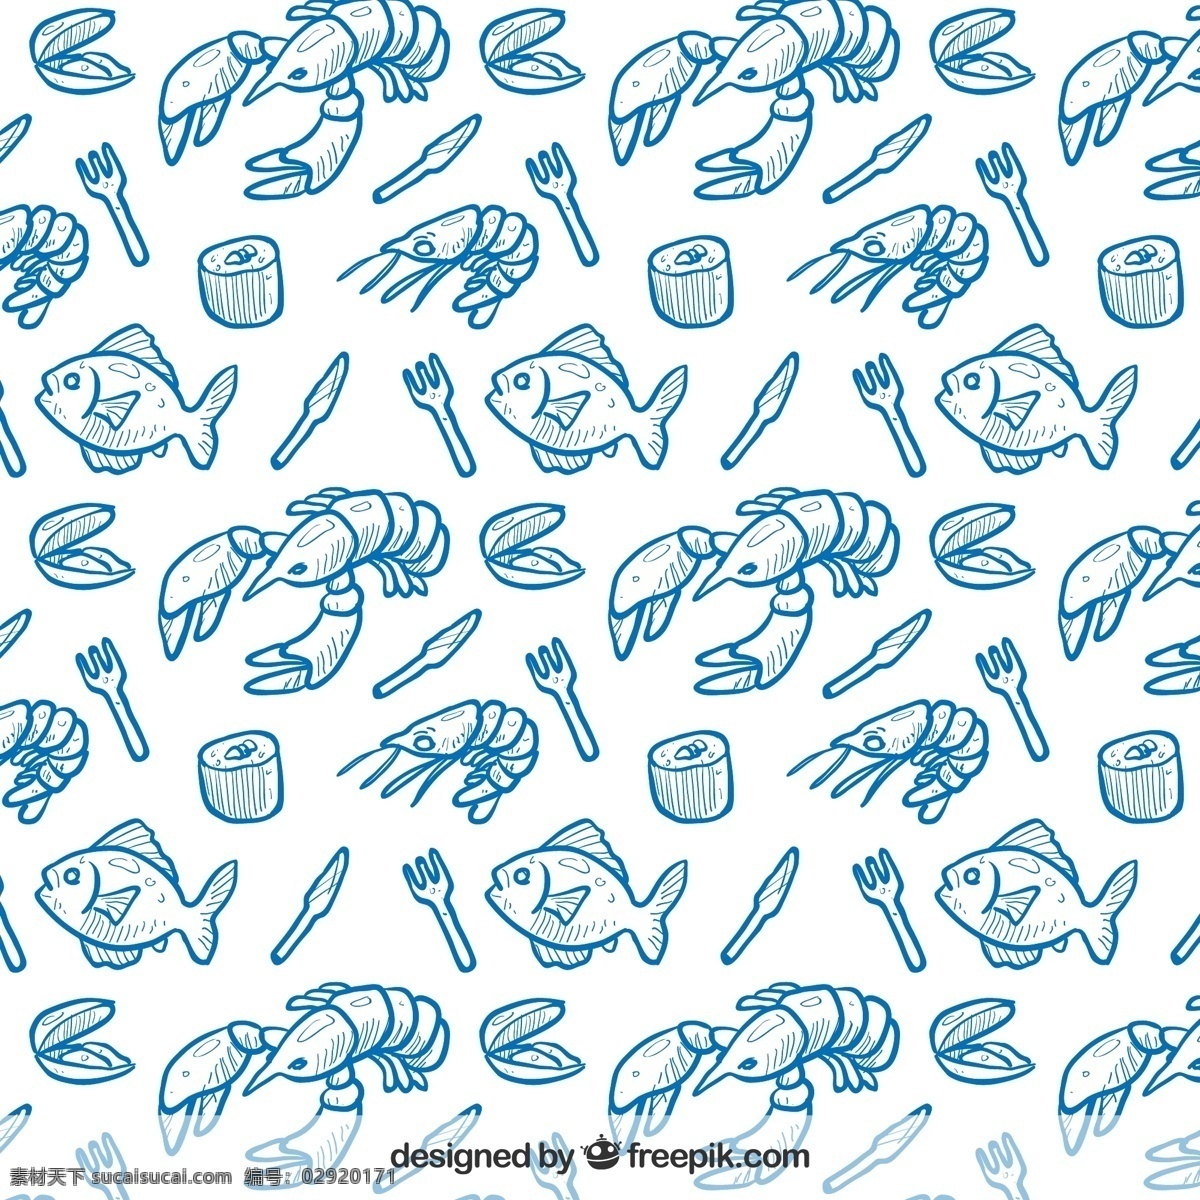 蓝色 素描 海鲜 餐饮 背景 餐饮美食背景 龙虾 鱼 海虾 刀叉 餐具 寿司 牡蛎 海鲜背景 餐饮背景图片 白色